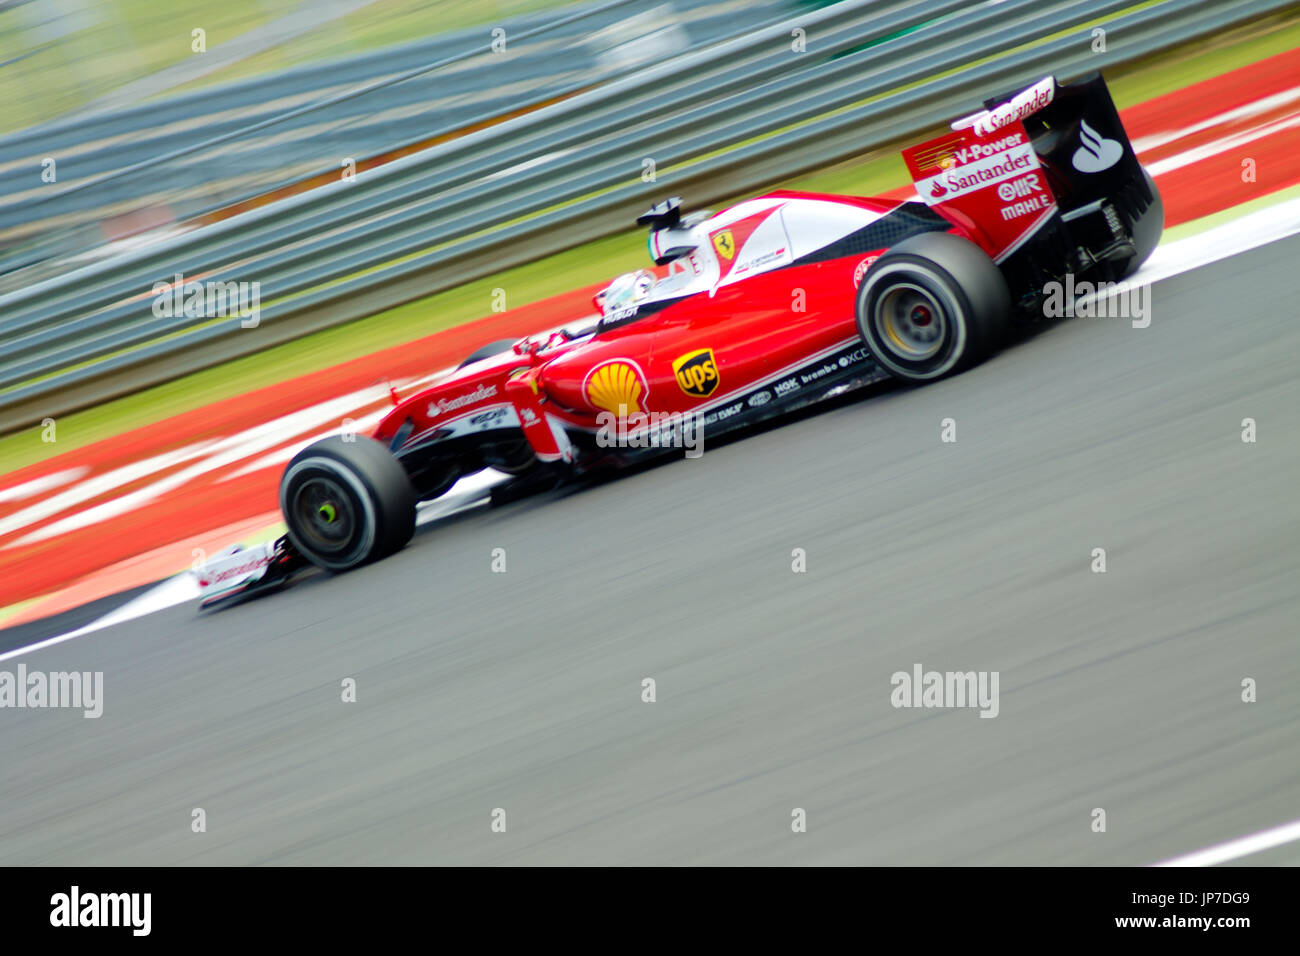 Sebastian Vettel auf die die erste Ecke des Grand Prix von Silverstone circuit während der 2016 britischen Formel 1 Grand Prix Stockfoto